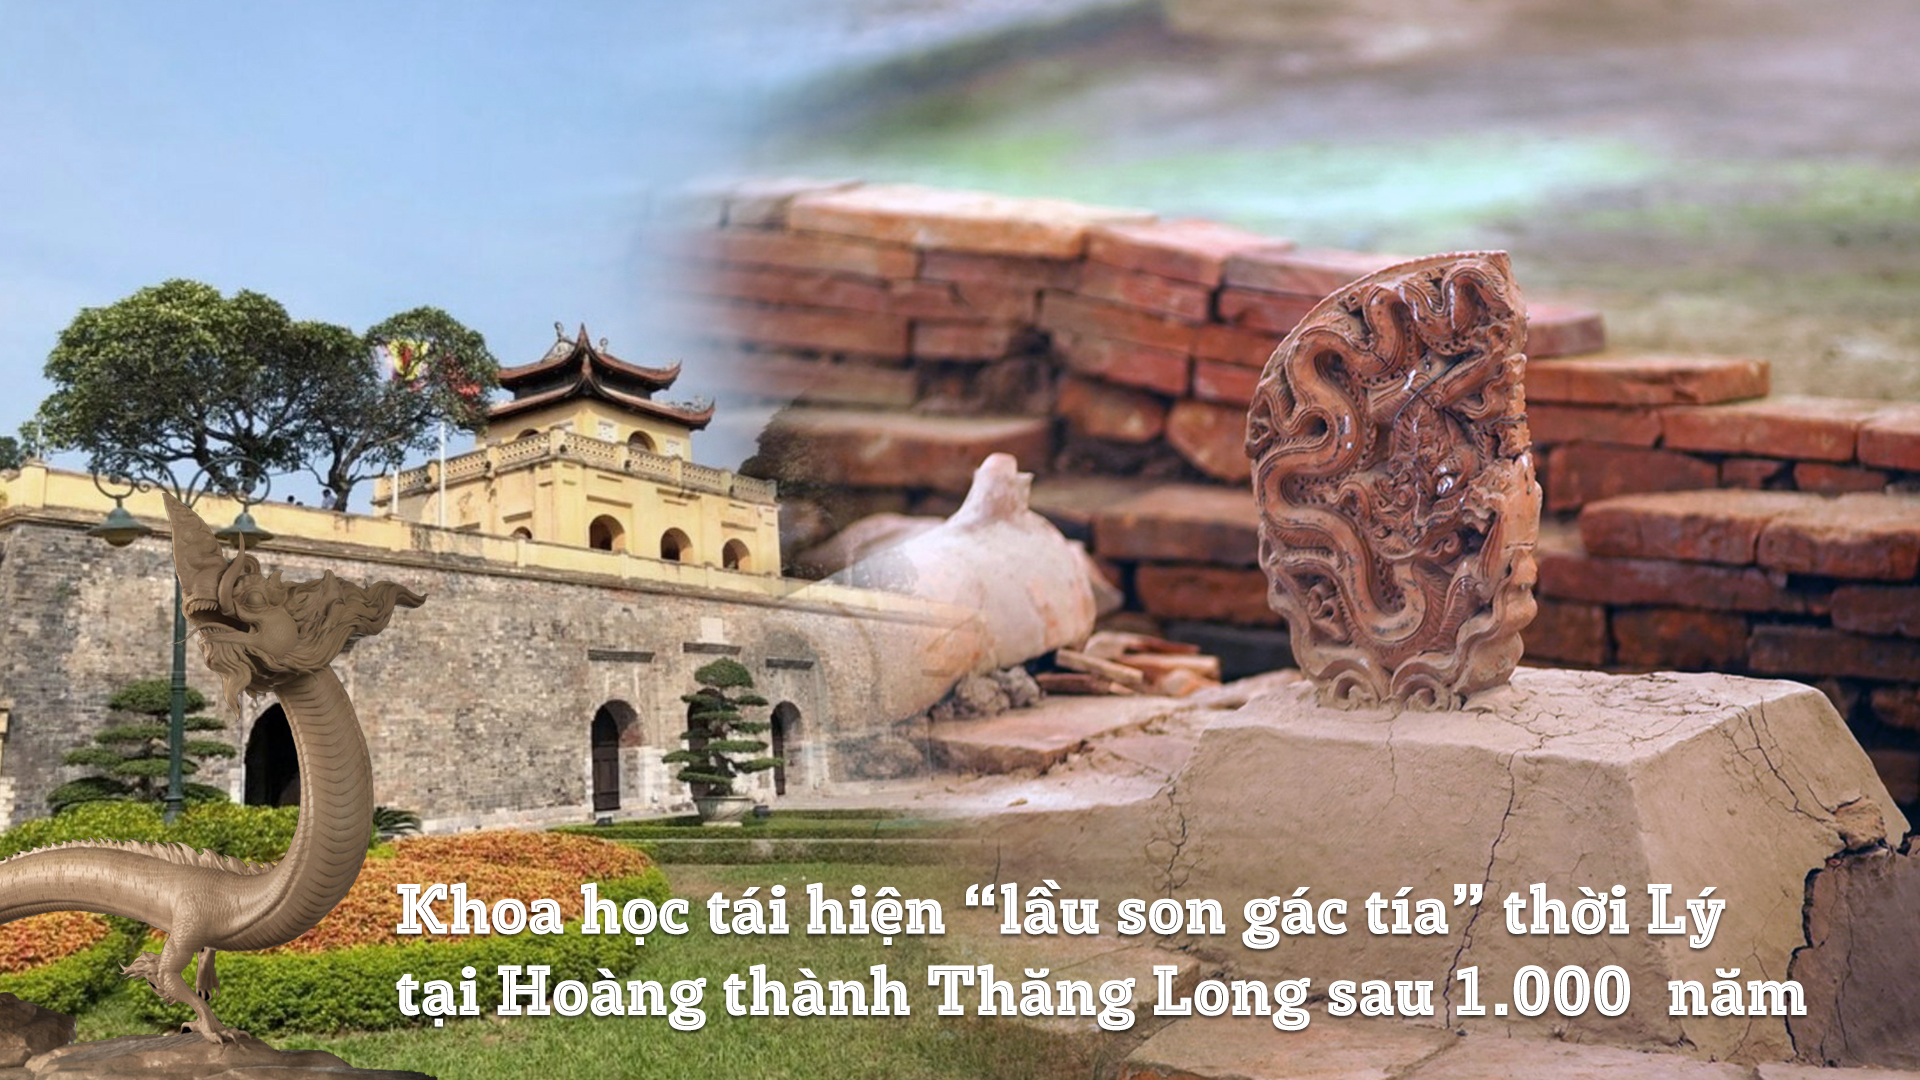 Hoàng thành Thăng Long là biểu tượng văn hóa đặc sắc của Thủ đô Hà Nội. Hãy cùng đến khám phá vẻ đẹp cổ kính và lịch sử của Hoàng thành Thăng Long qua hình ảnh.